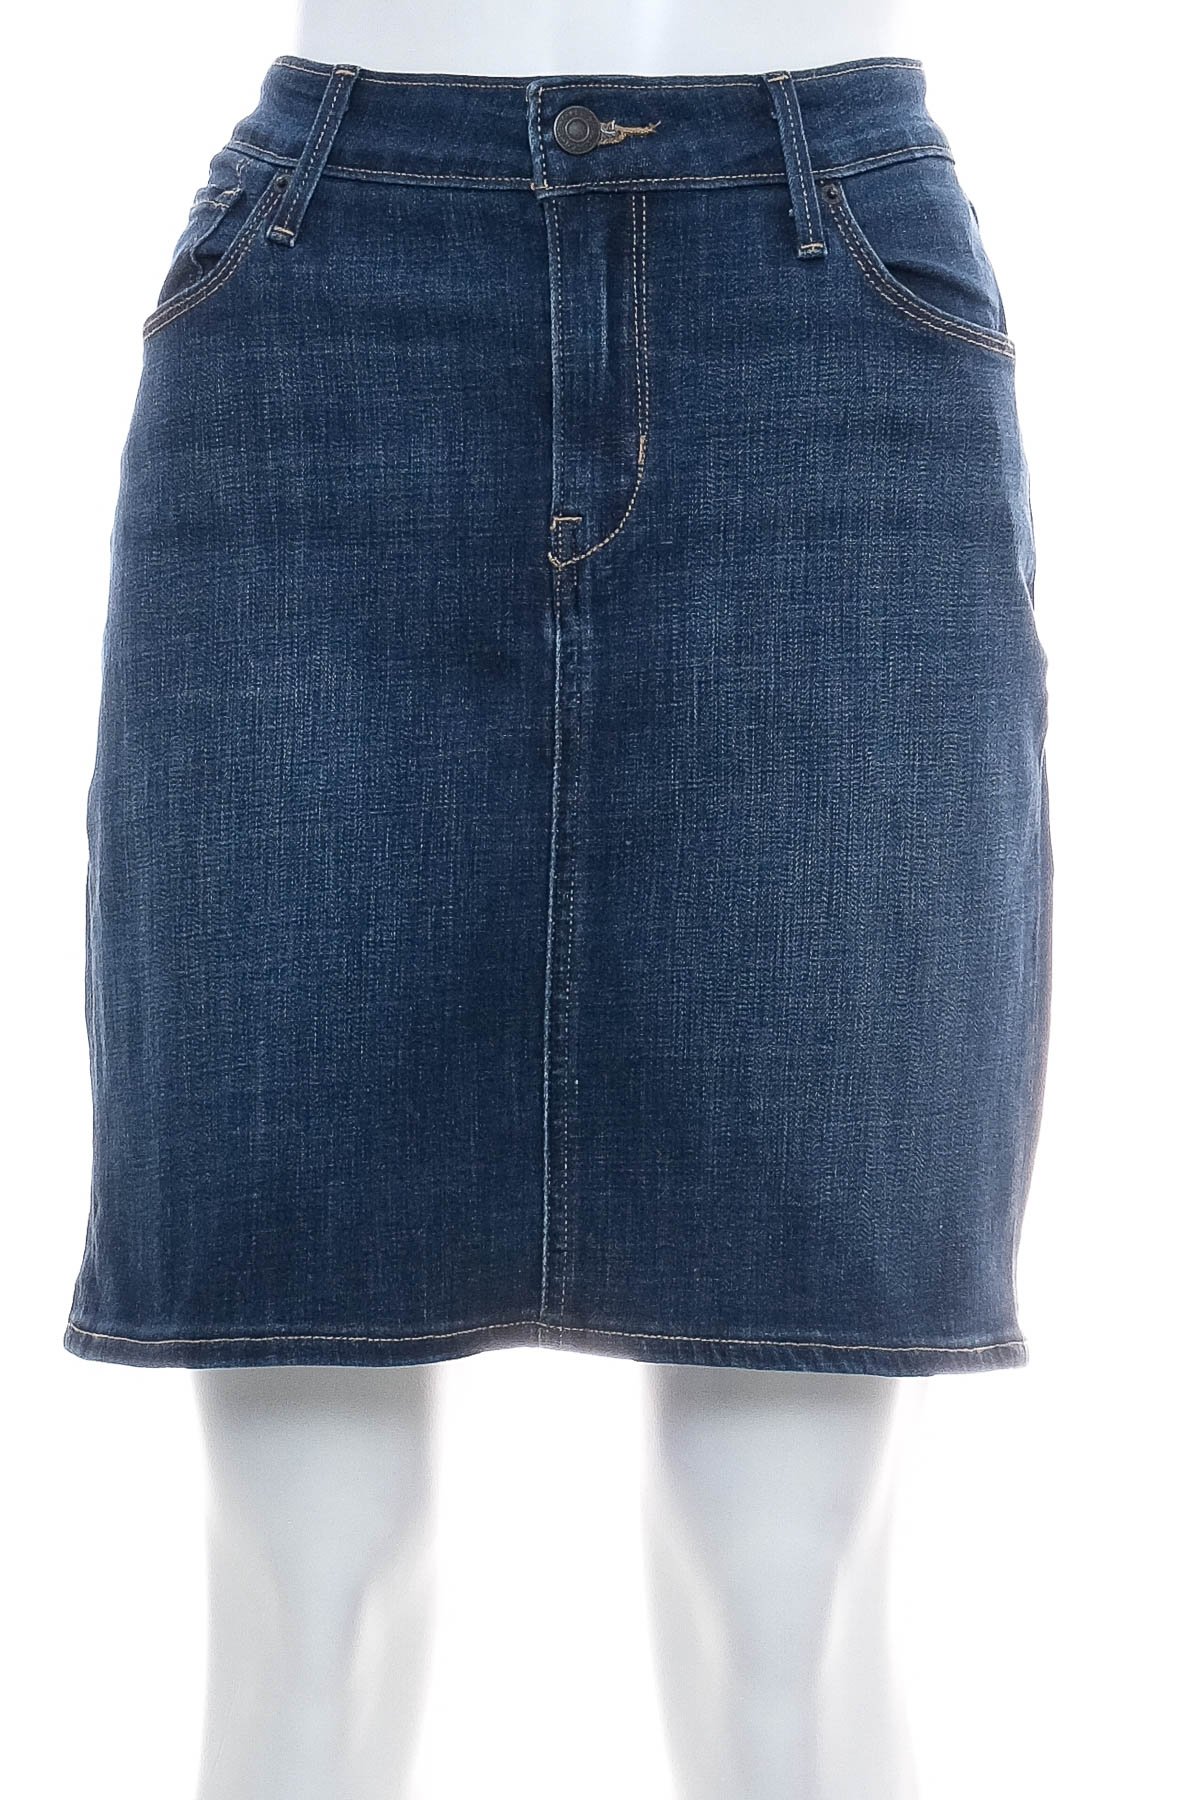 Spódnica jeansowa - Levi Strauss & Co. - 0